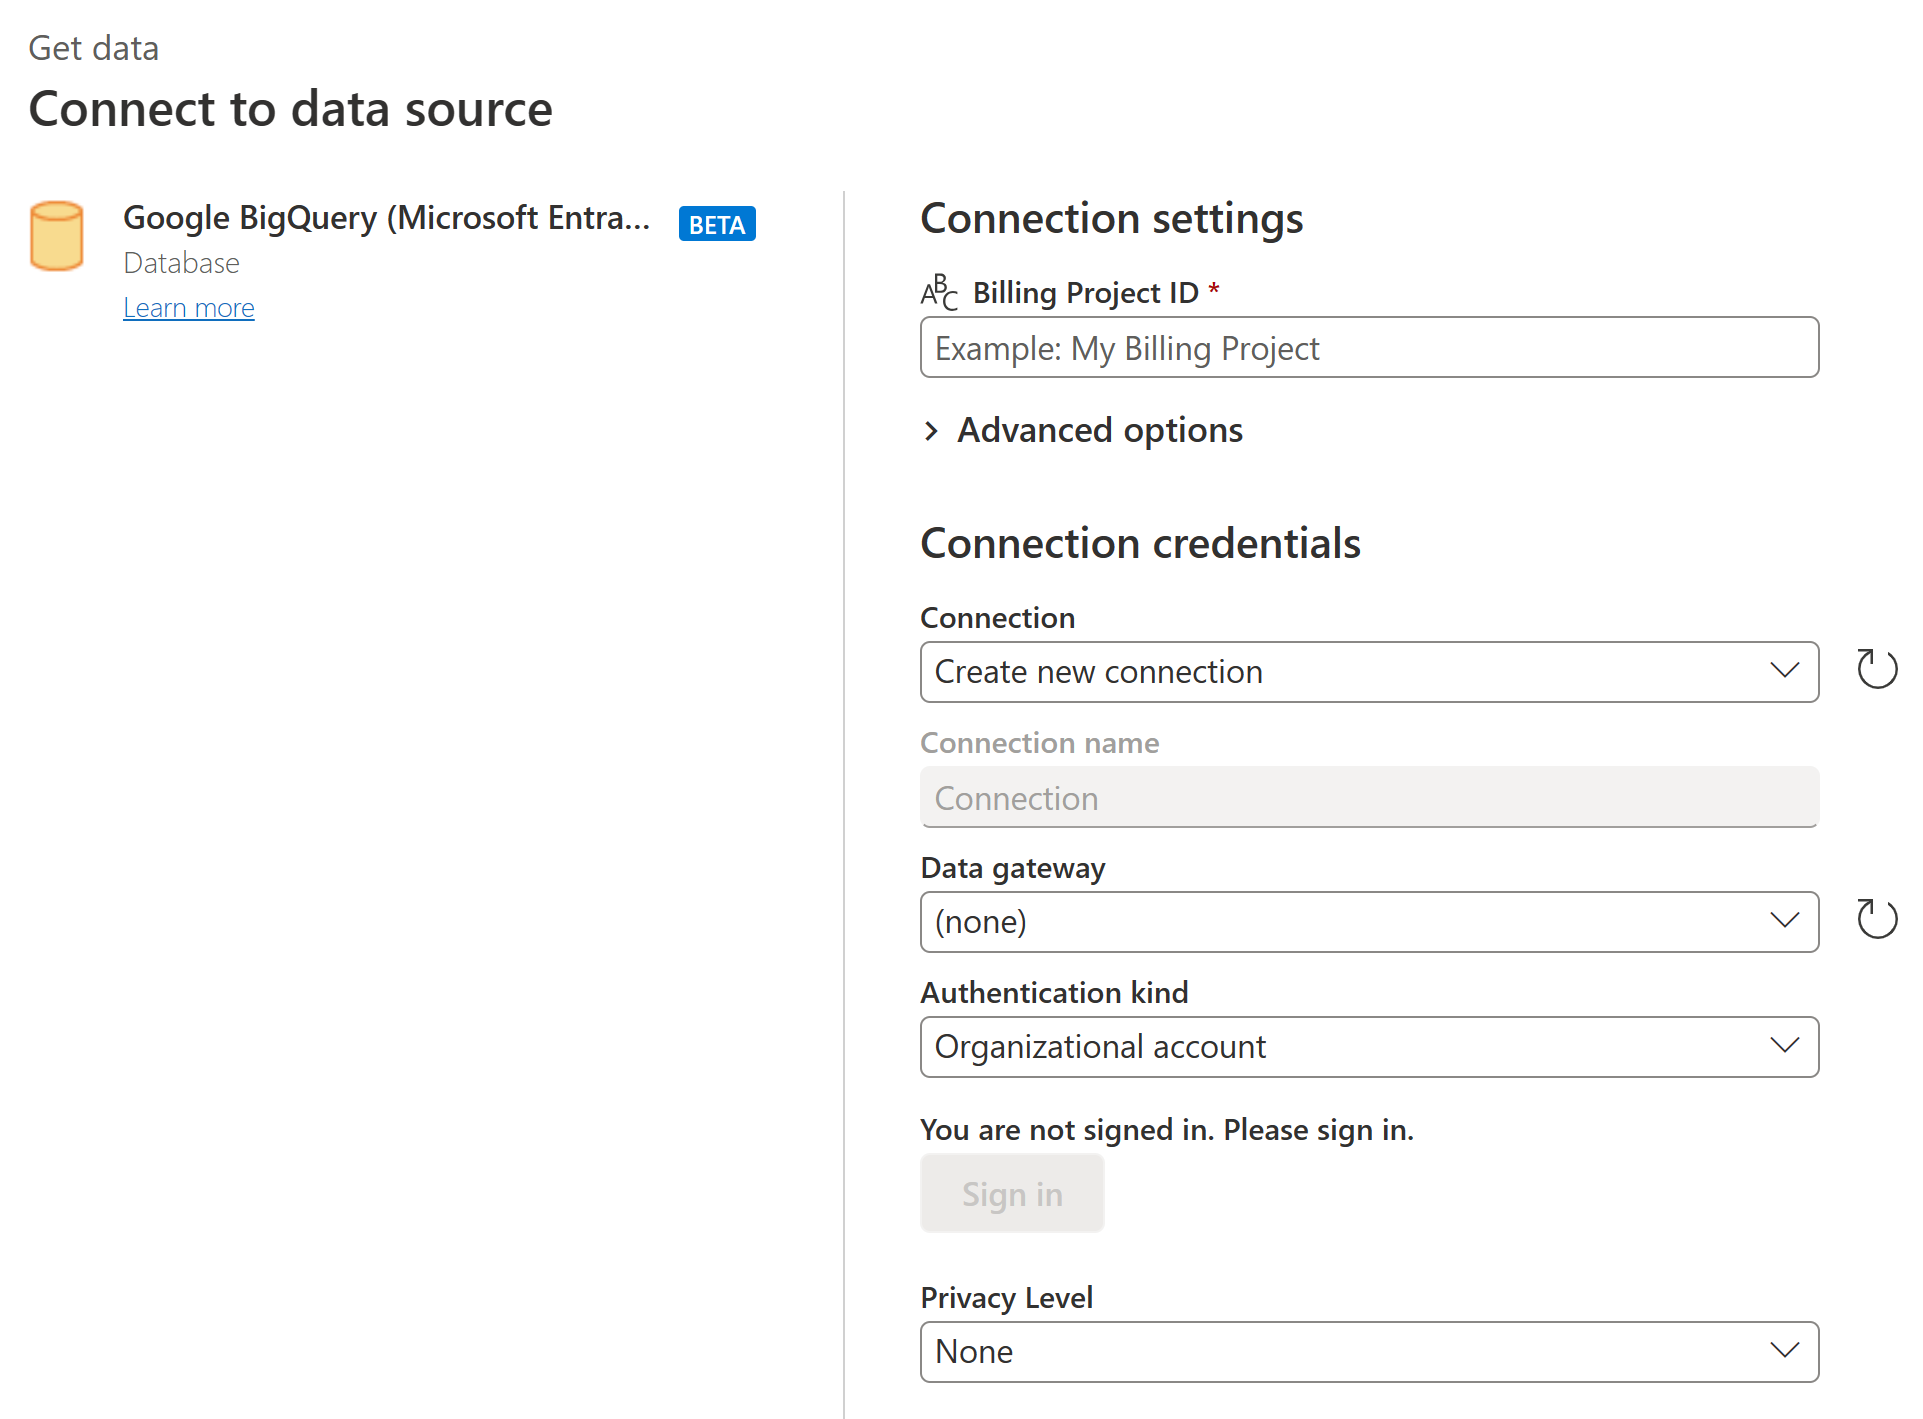 Снимок экрана: диалоговое окно Подключение к источнику данных, в котором вы вводите параметры подключения Google BigQuery (Идентификатор Microsoft Entra ID) и учетные данные.